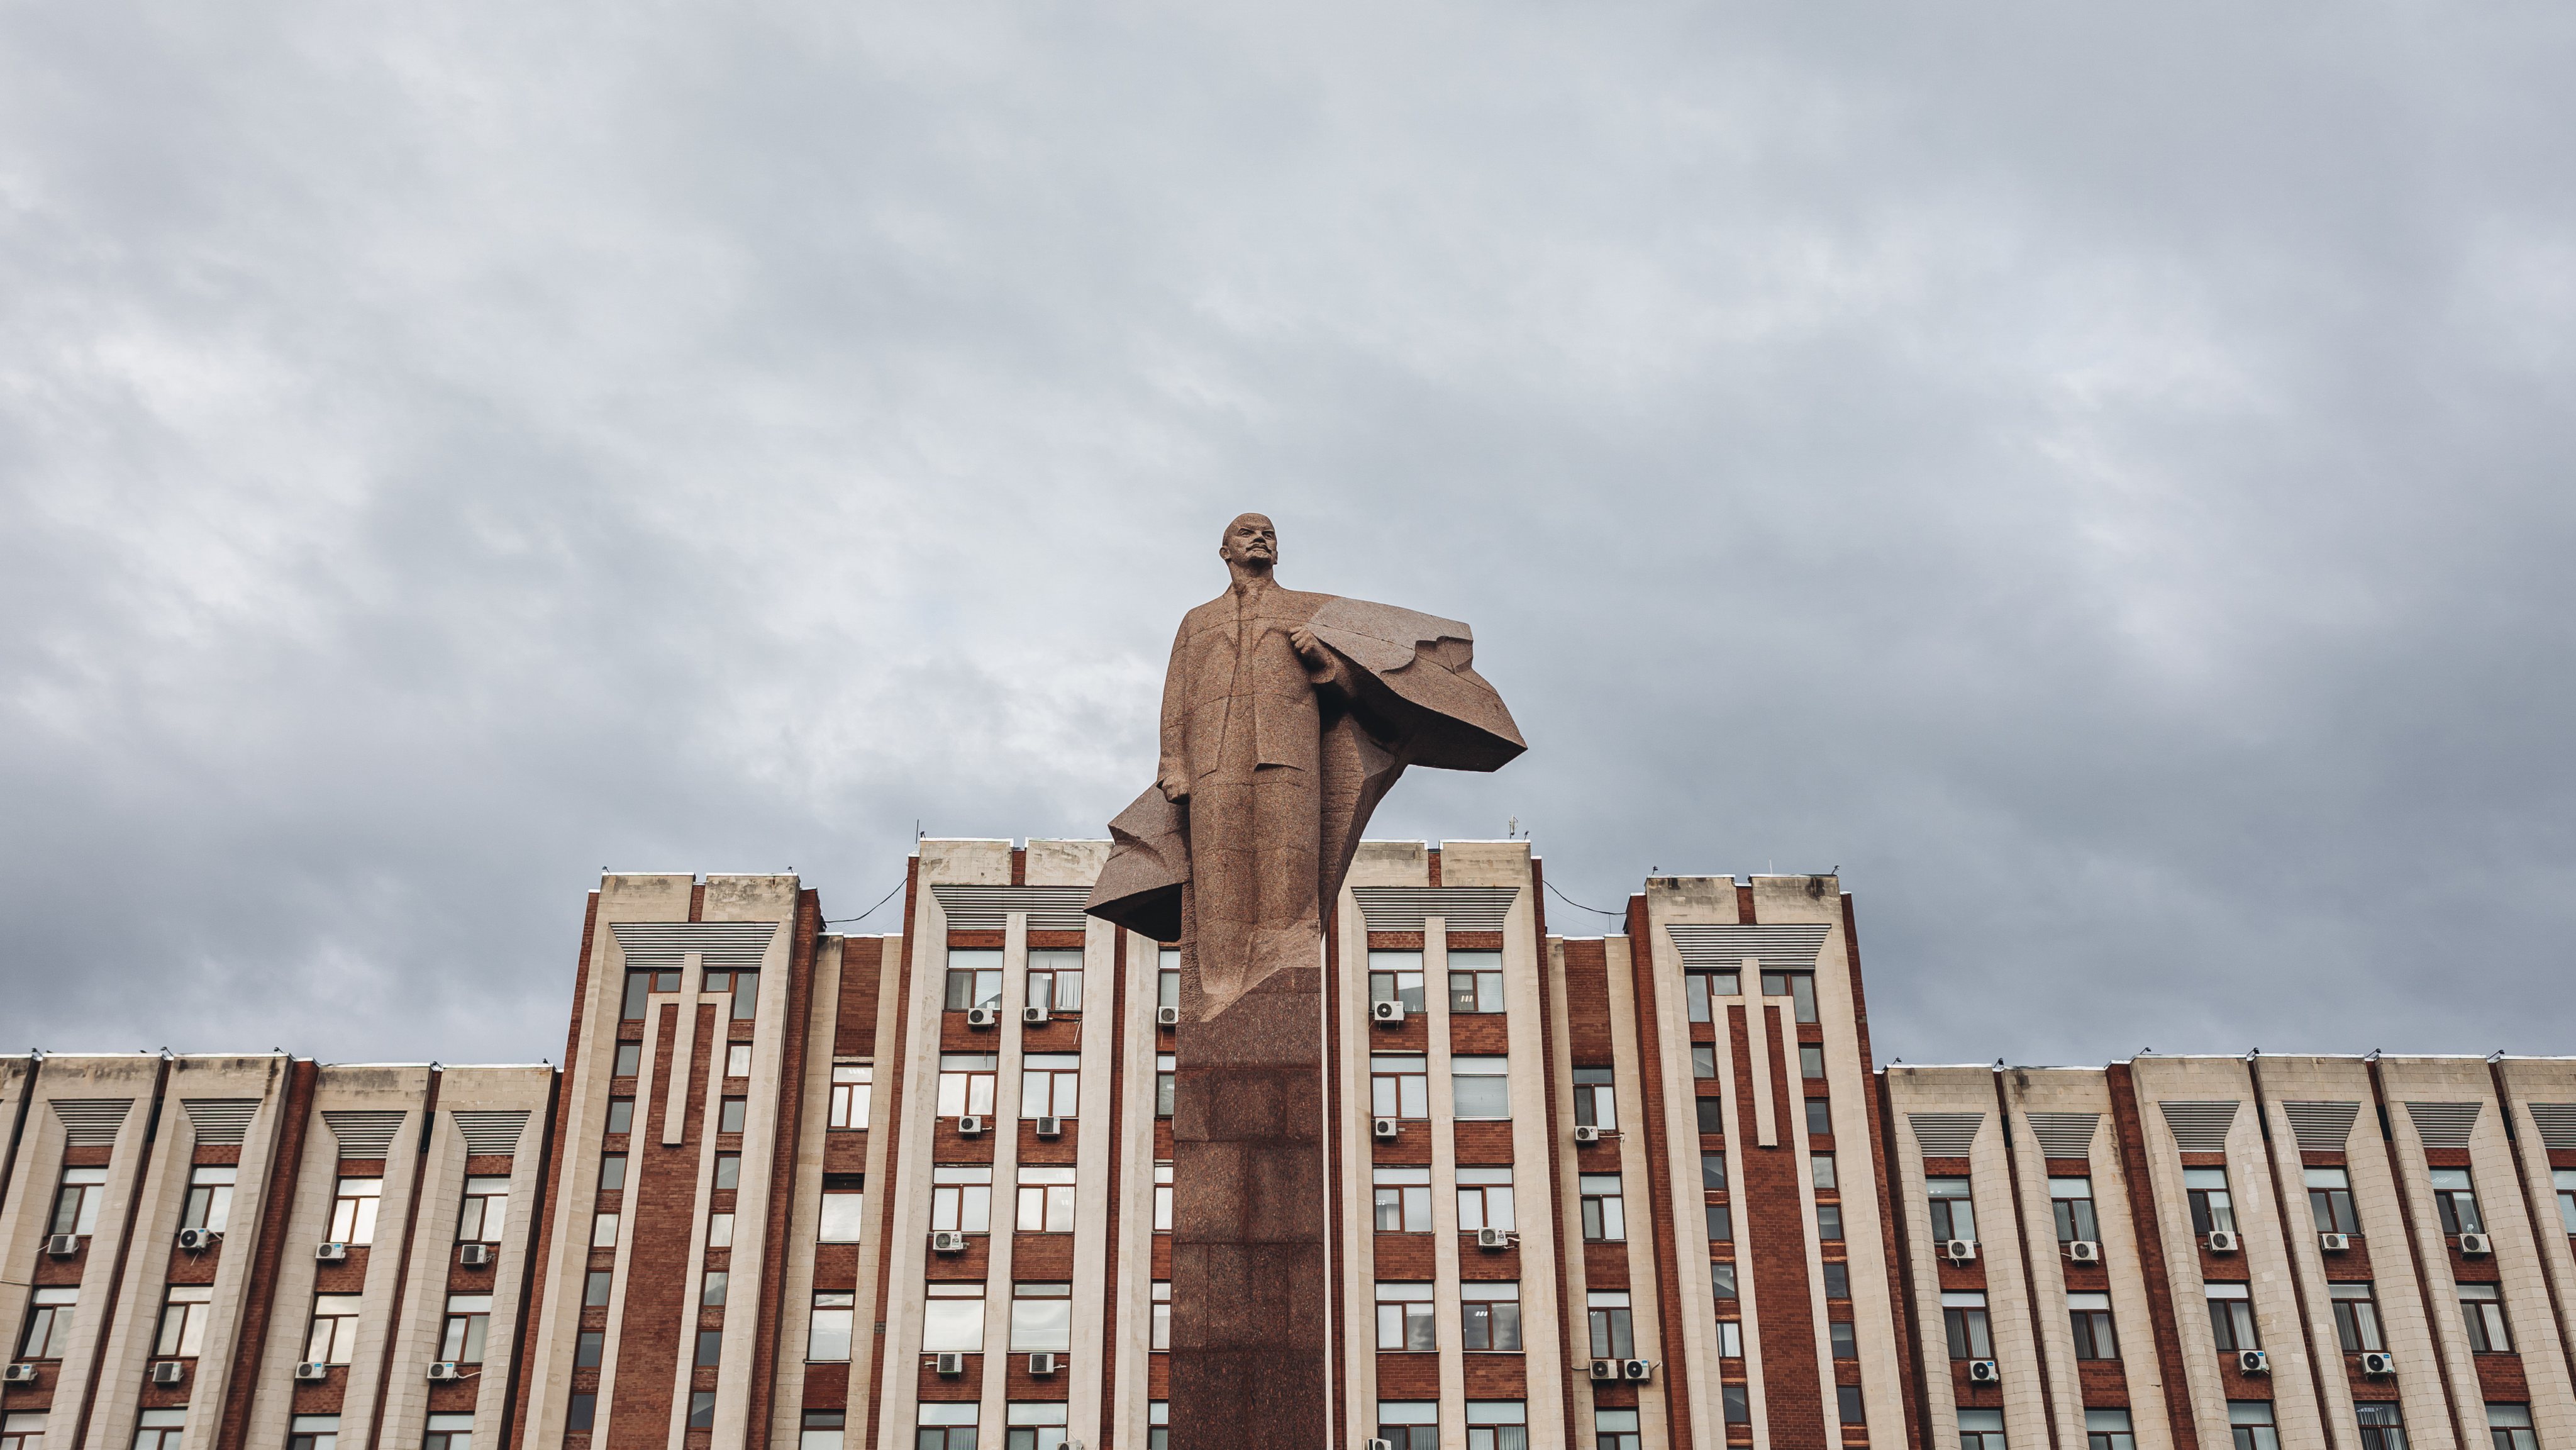 Statue of Vladimir Lenin seen in front of Presidential